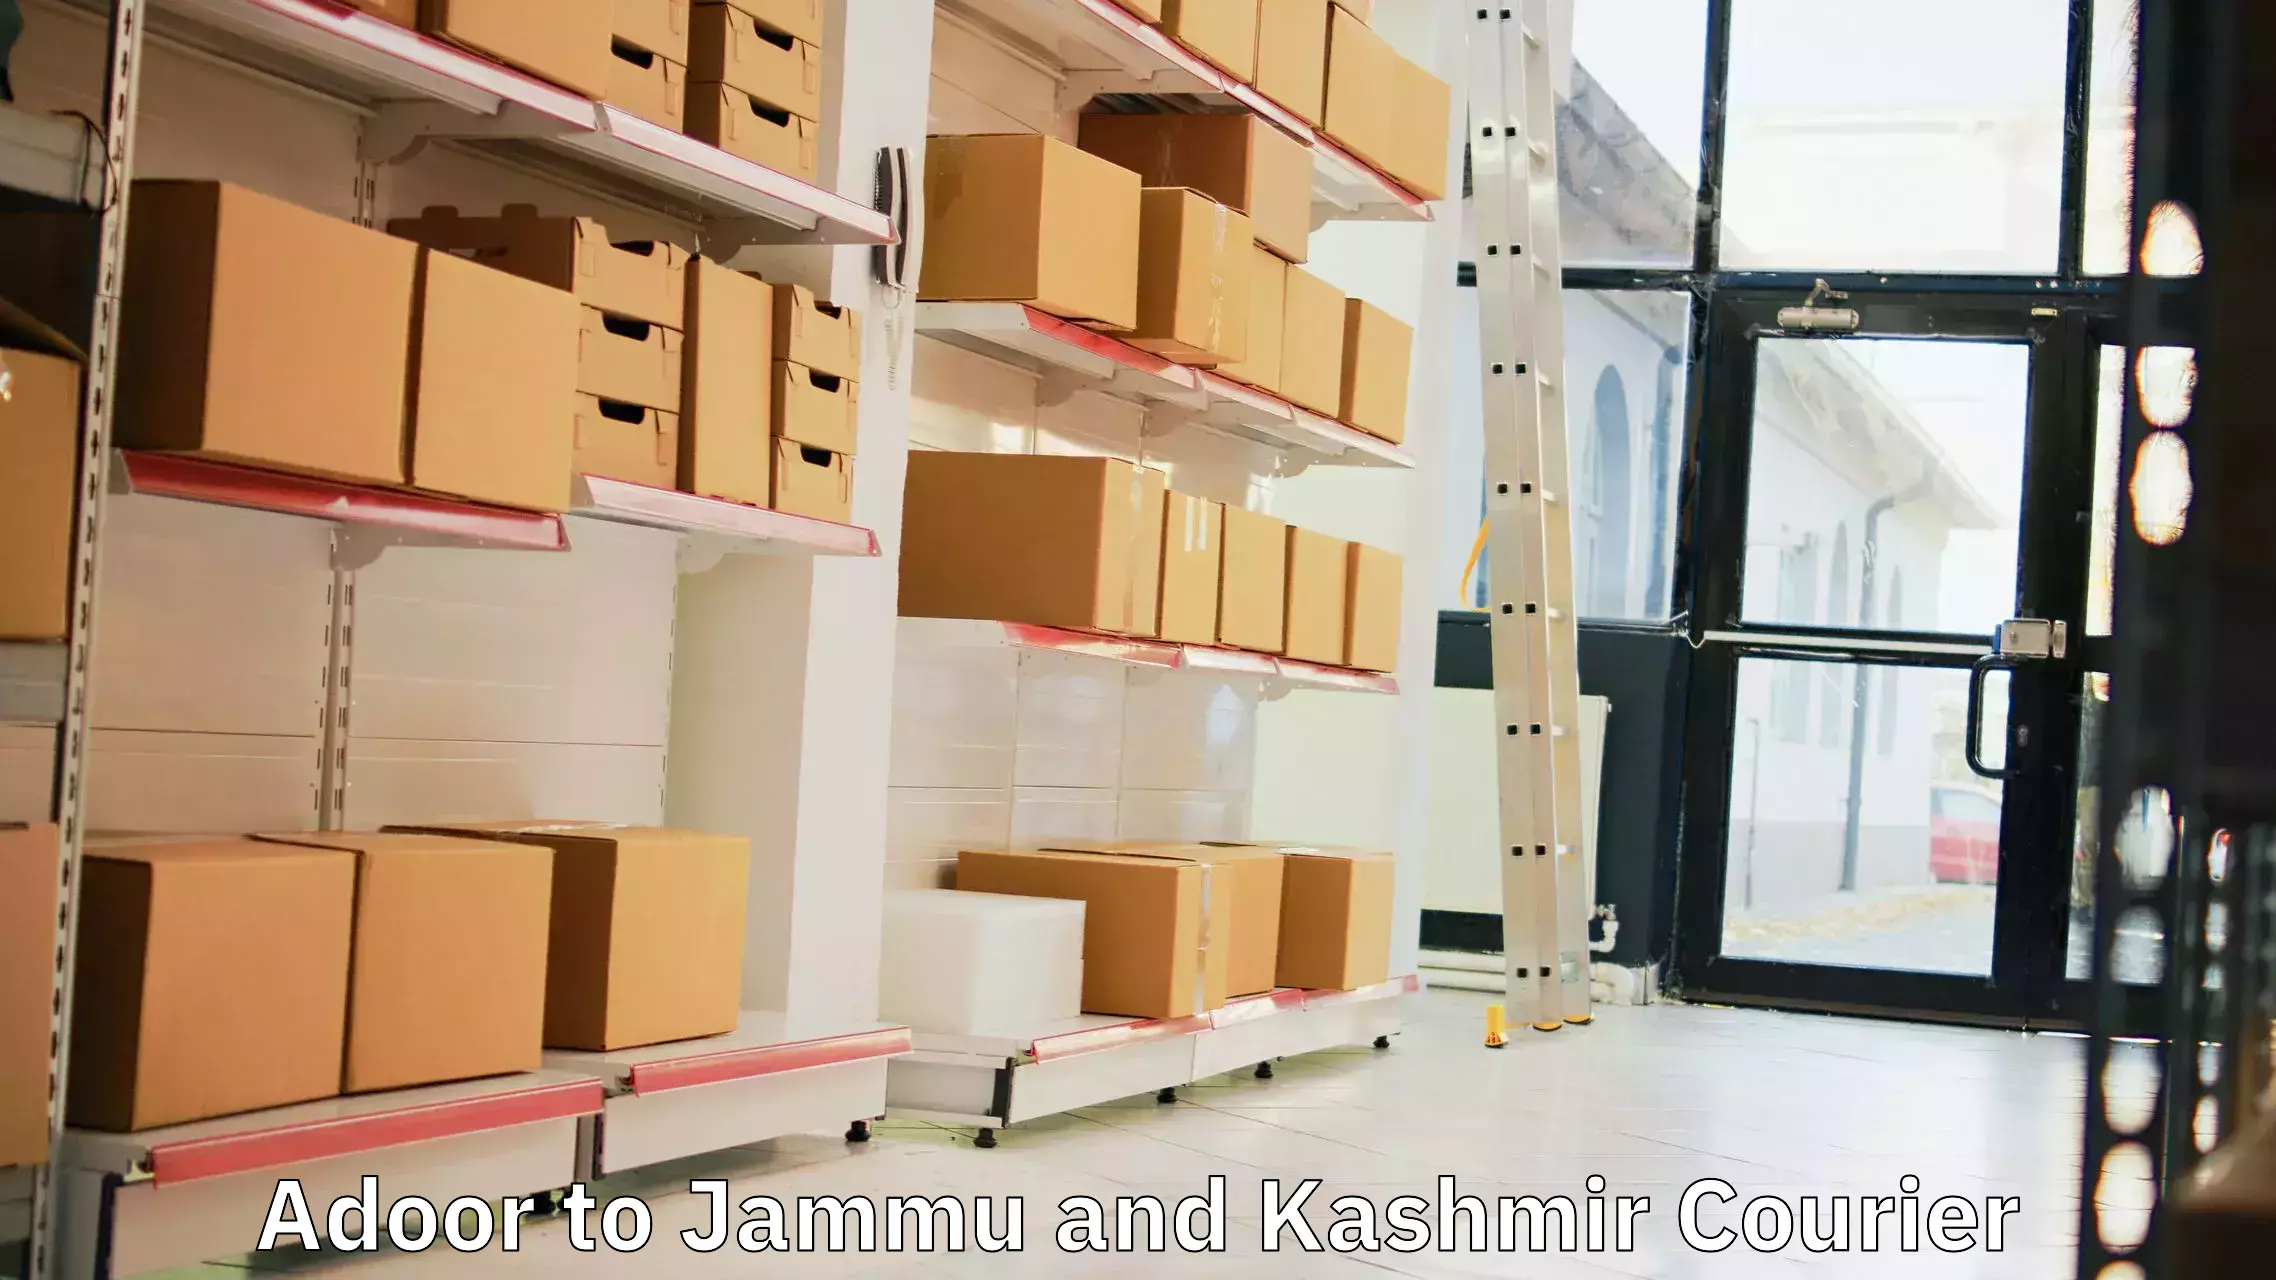 Logistics management Adoor to Jammu and Kashmir